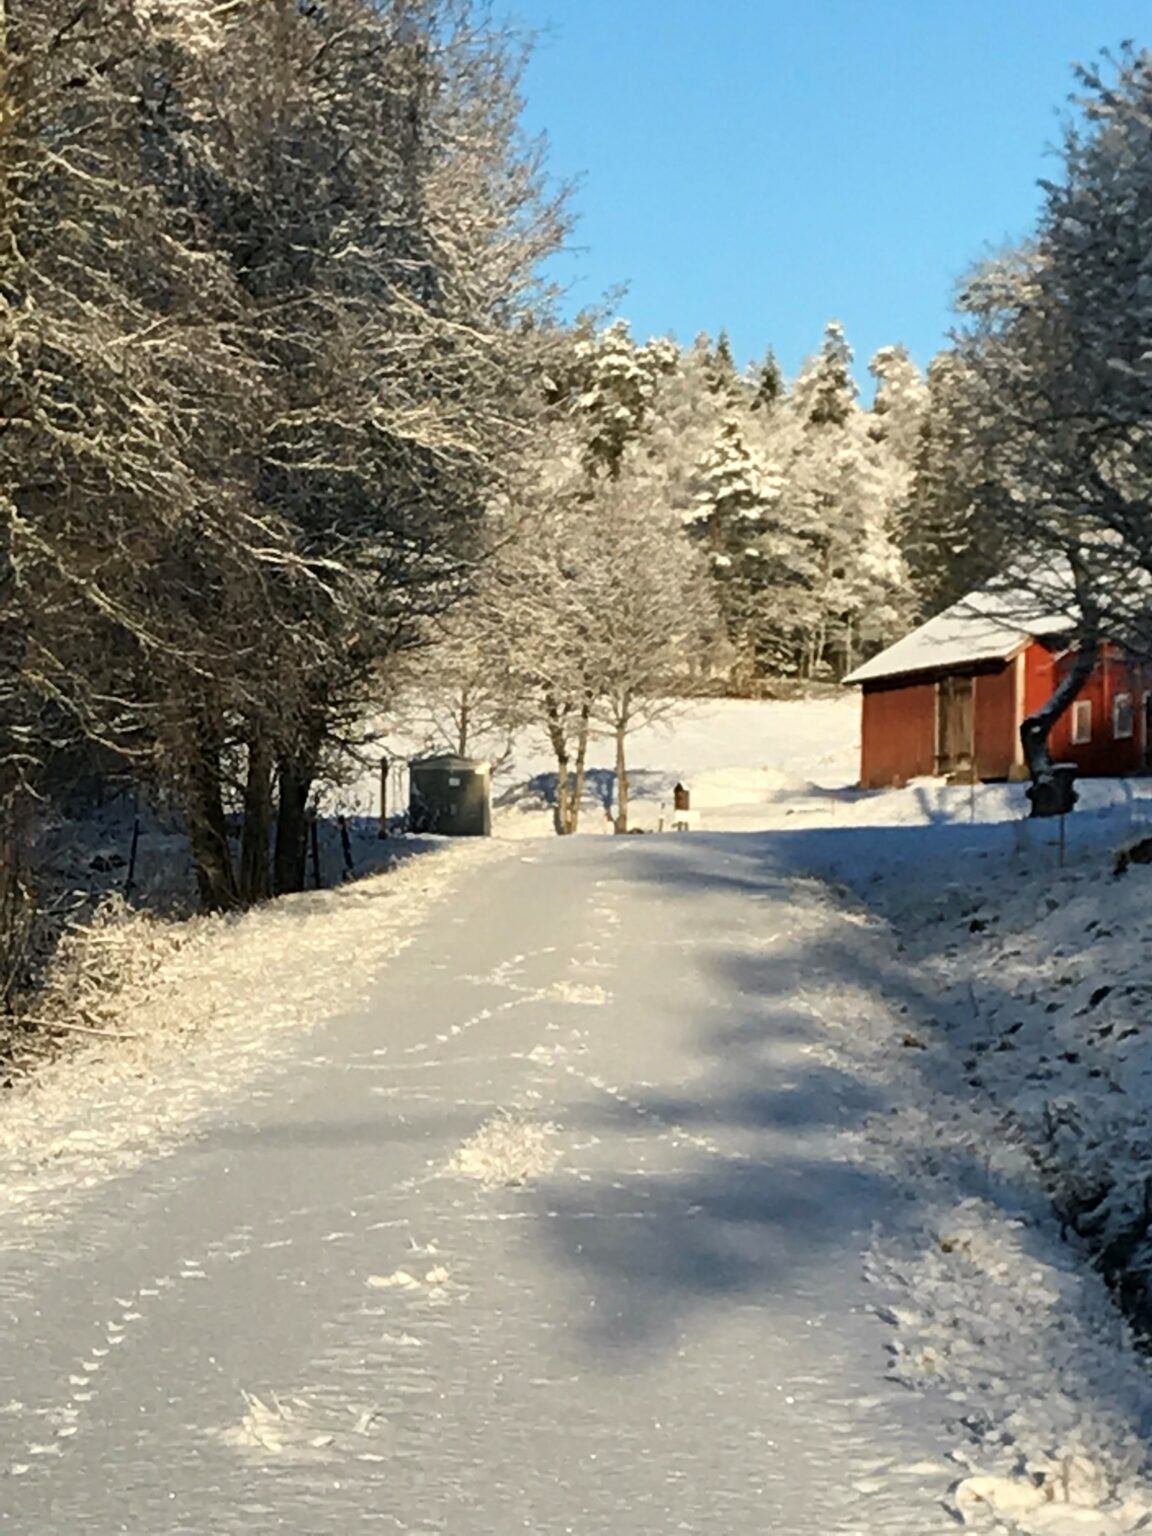 Vinterbild på en väg täckt av orörd snö där en hare har skuttat fram, i bakgrunden skymtar ett rött hus.